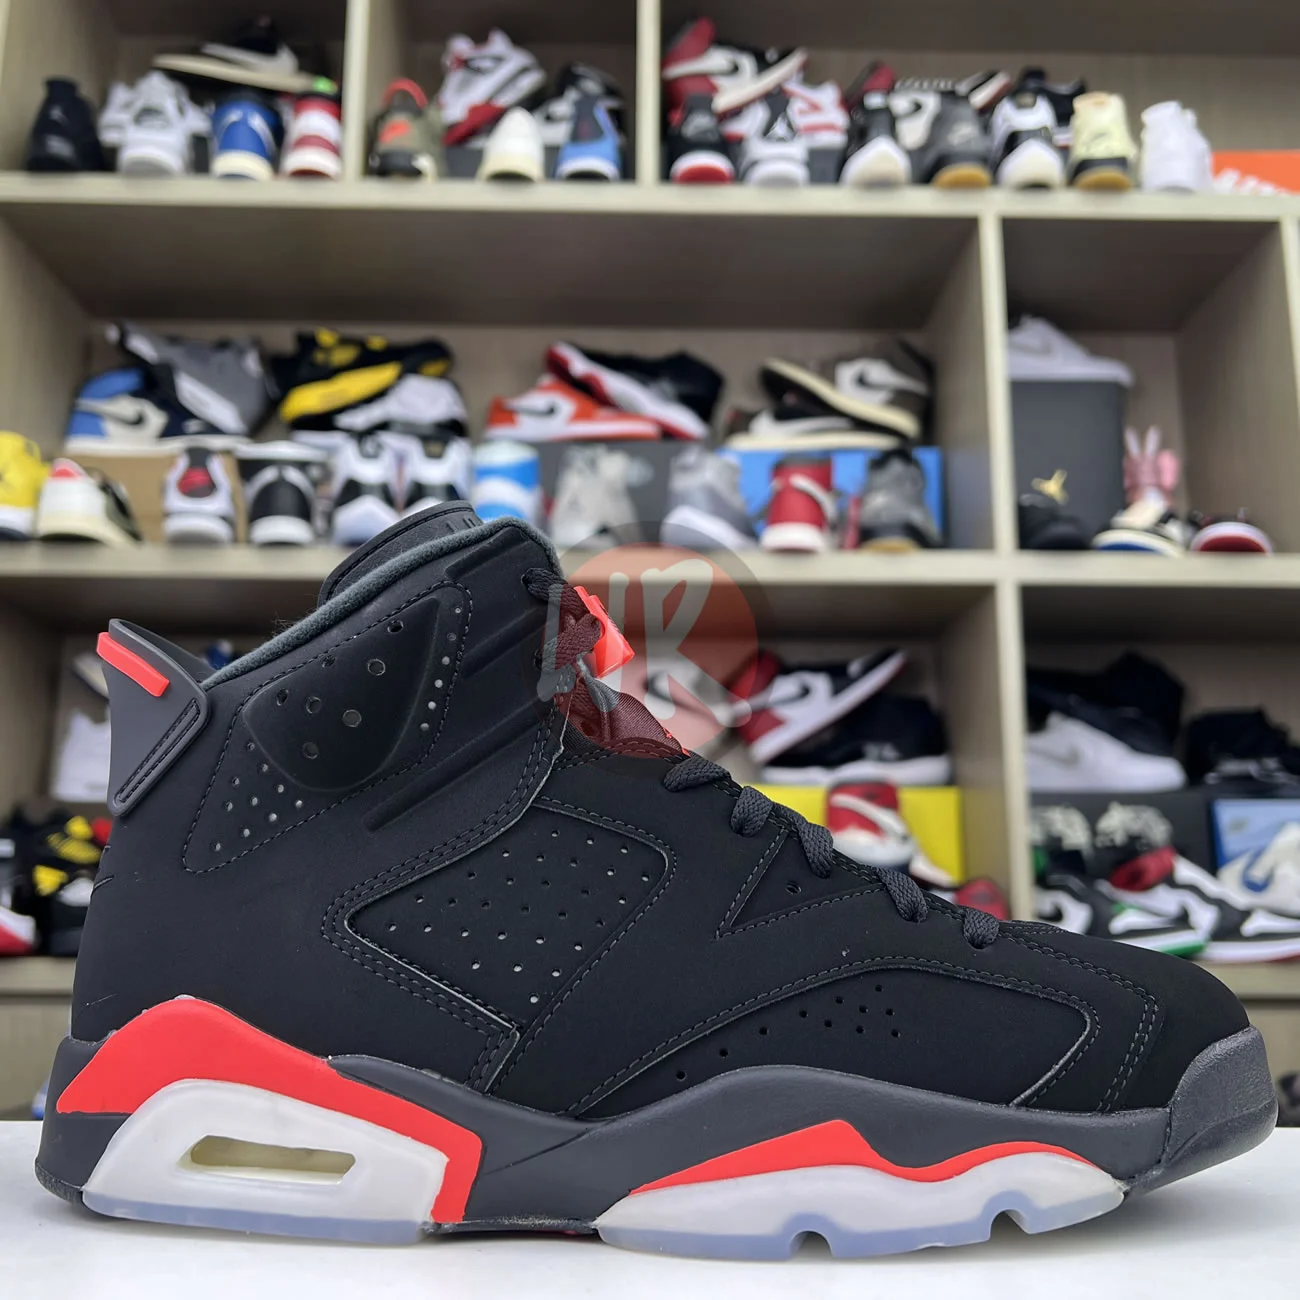 Air Jordan 6 Retro Black Infrared 2019 384664 060 Ljr Sneakers (2) - bc-ljr.com